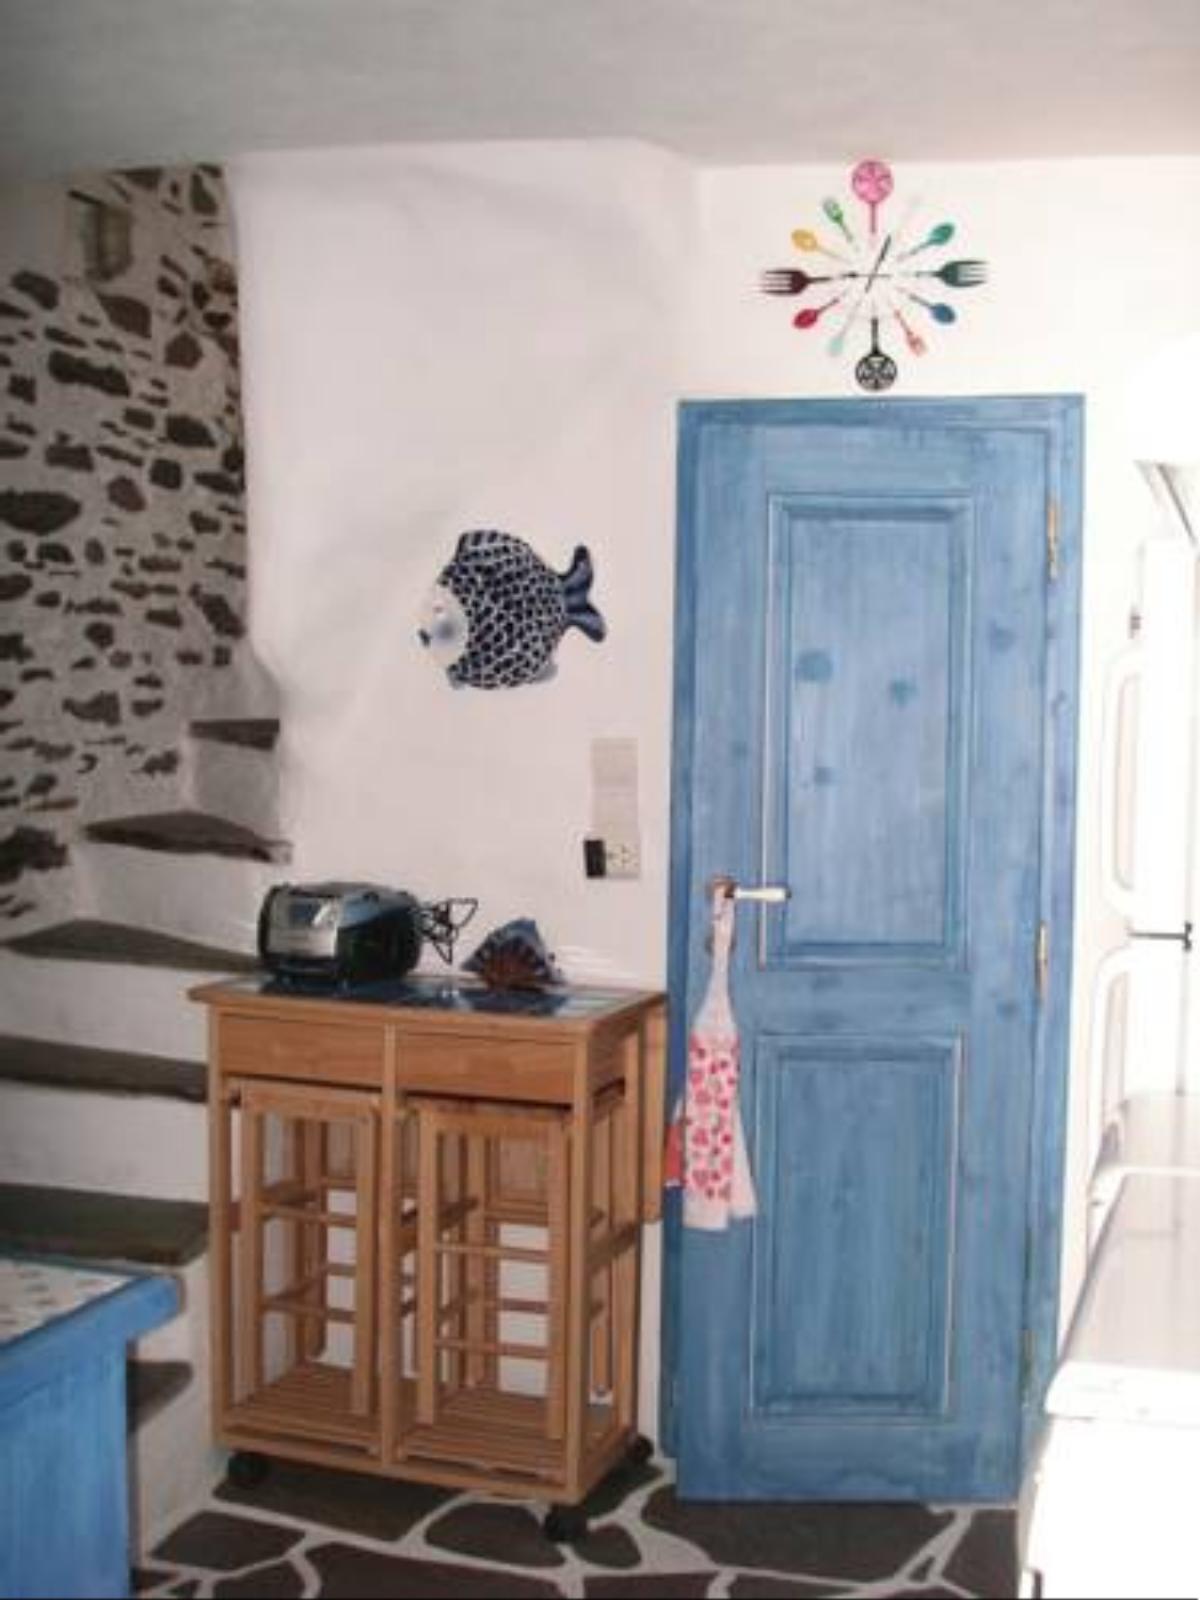 3-level doll house in Kea Ioulida/Chora, Cyclades Hotel Ioulida Greece